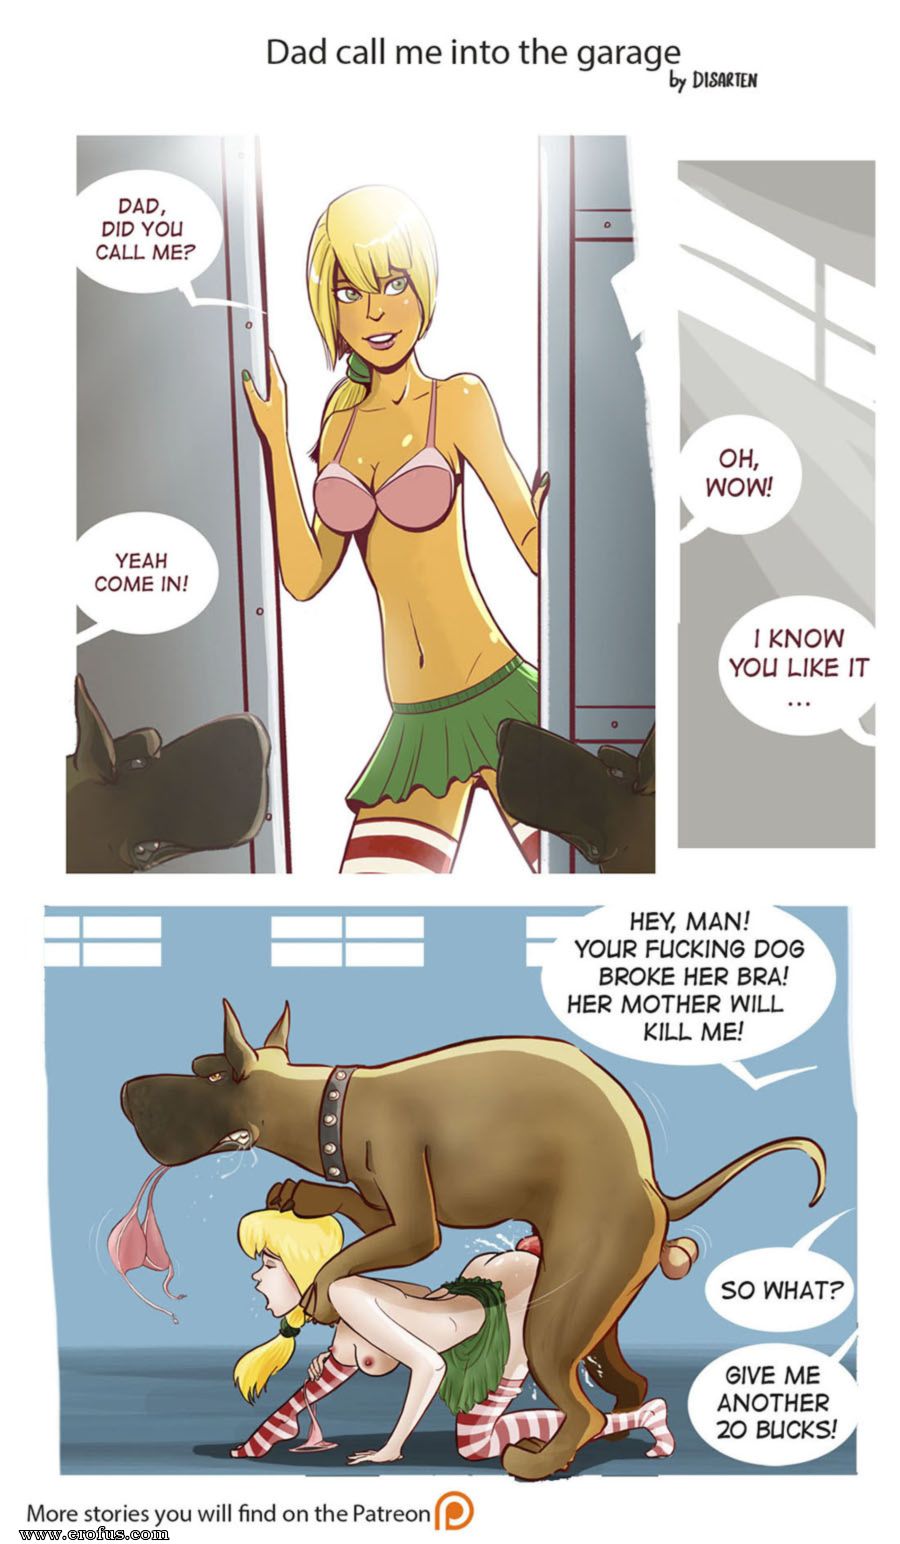 Anal Dog Hentai Porn - Page 114 | various-authors/disarten-comics/artworks | - Sex and Porn Comics  | kapitantver.ru